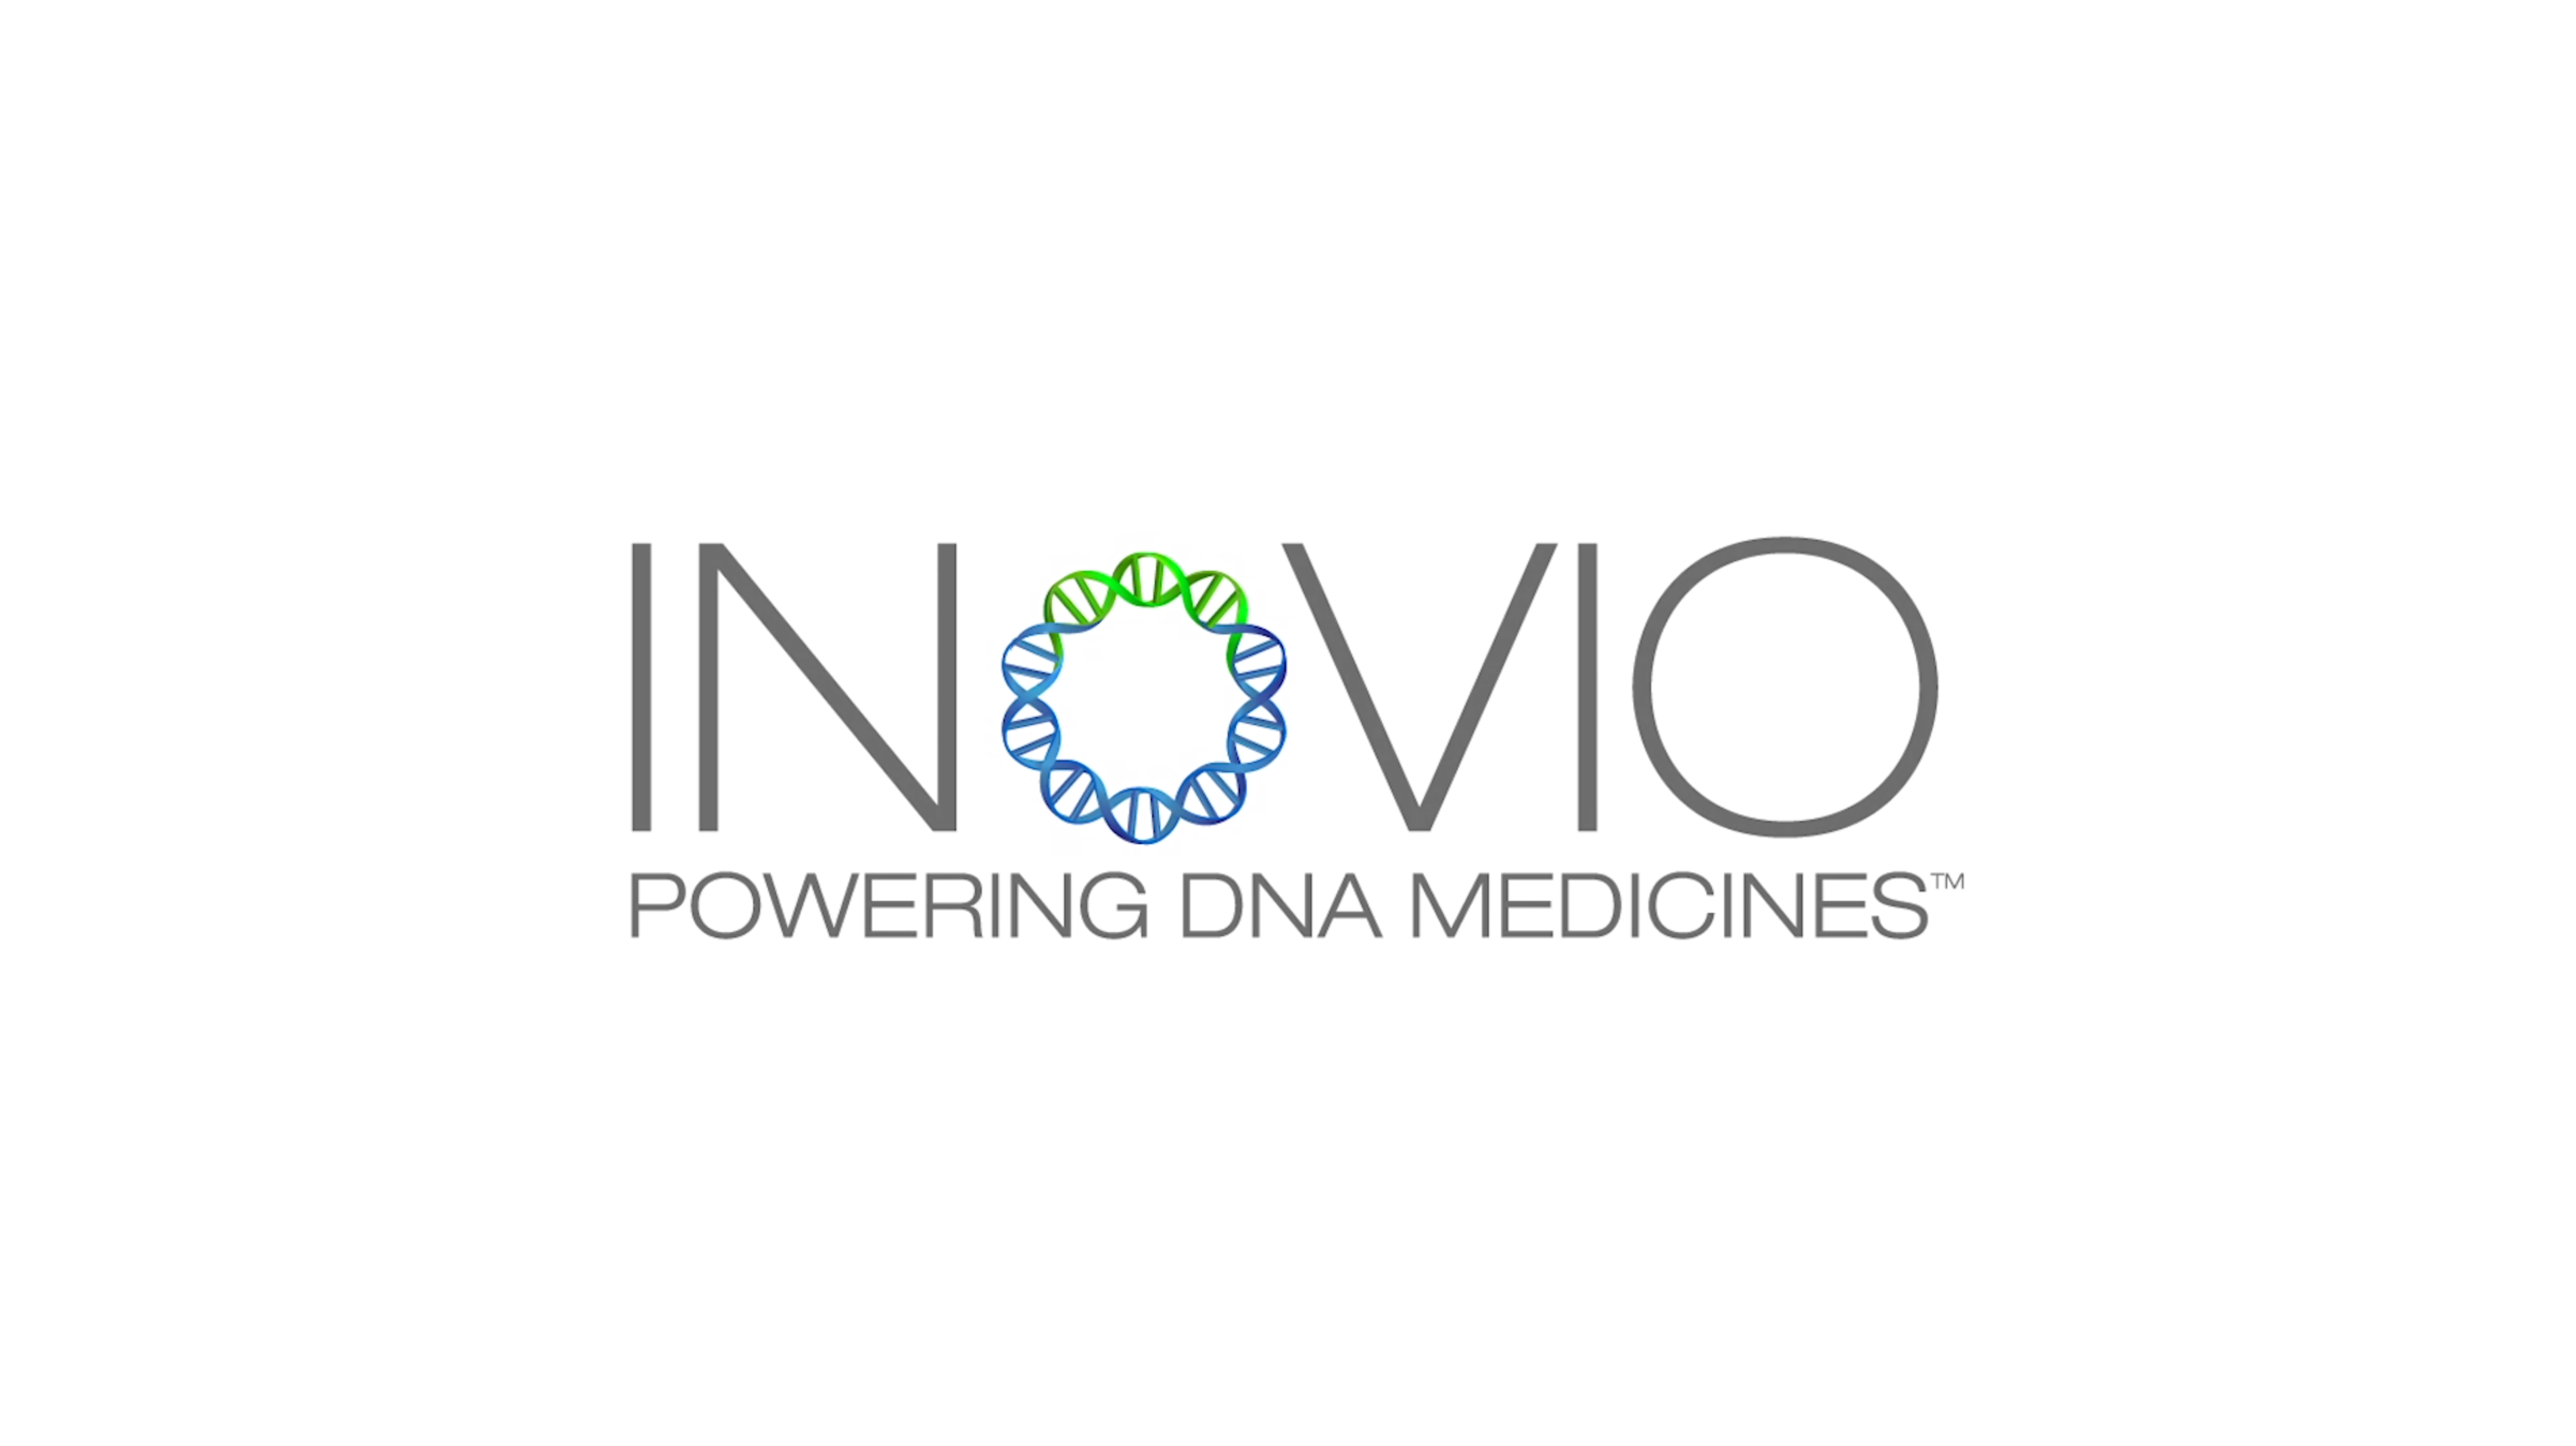 INOVIO Pharmaceuticals